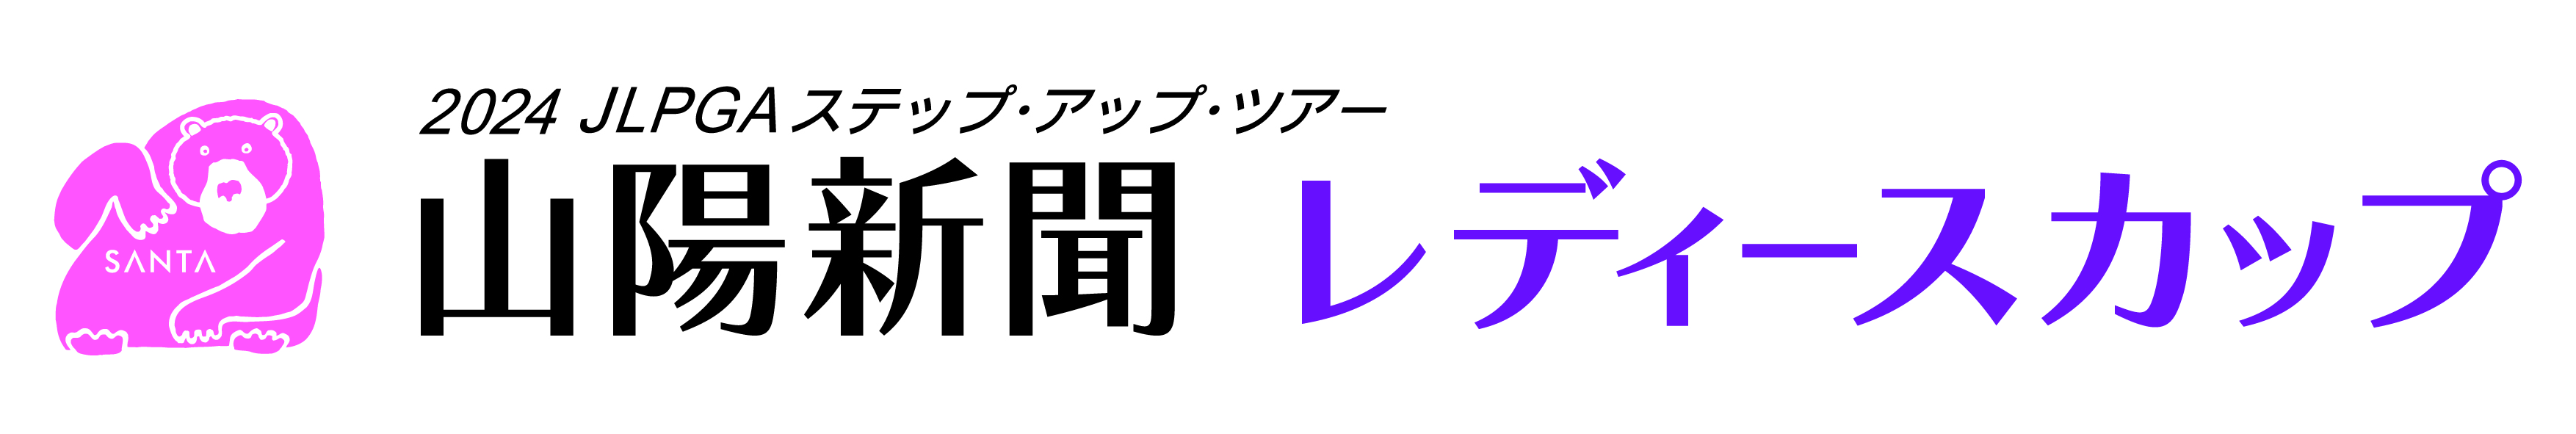 山陽新聞レディースカップロゴ画像